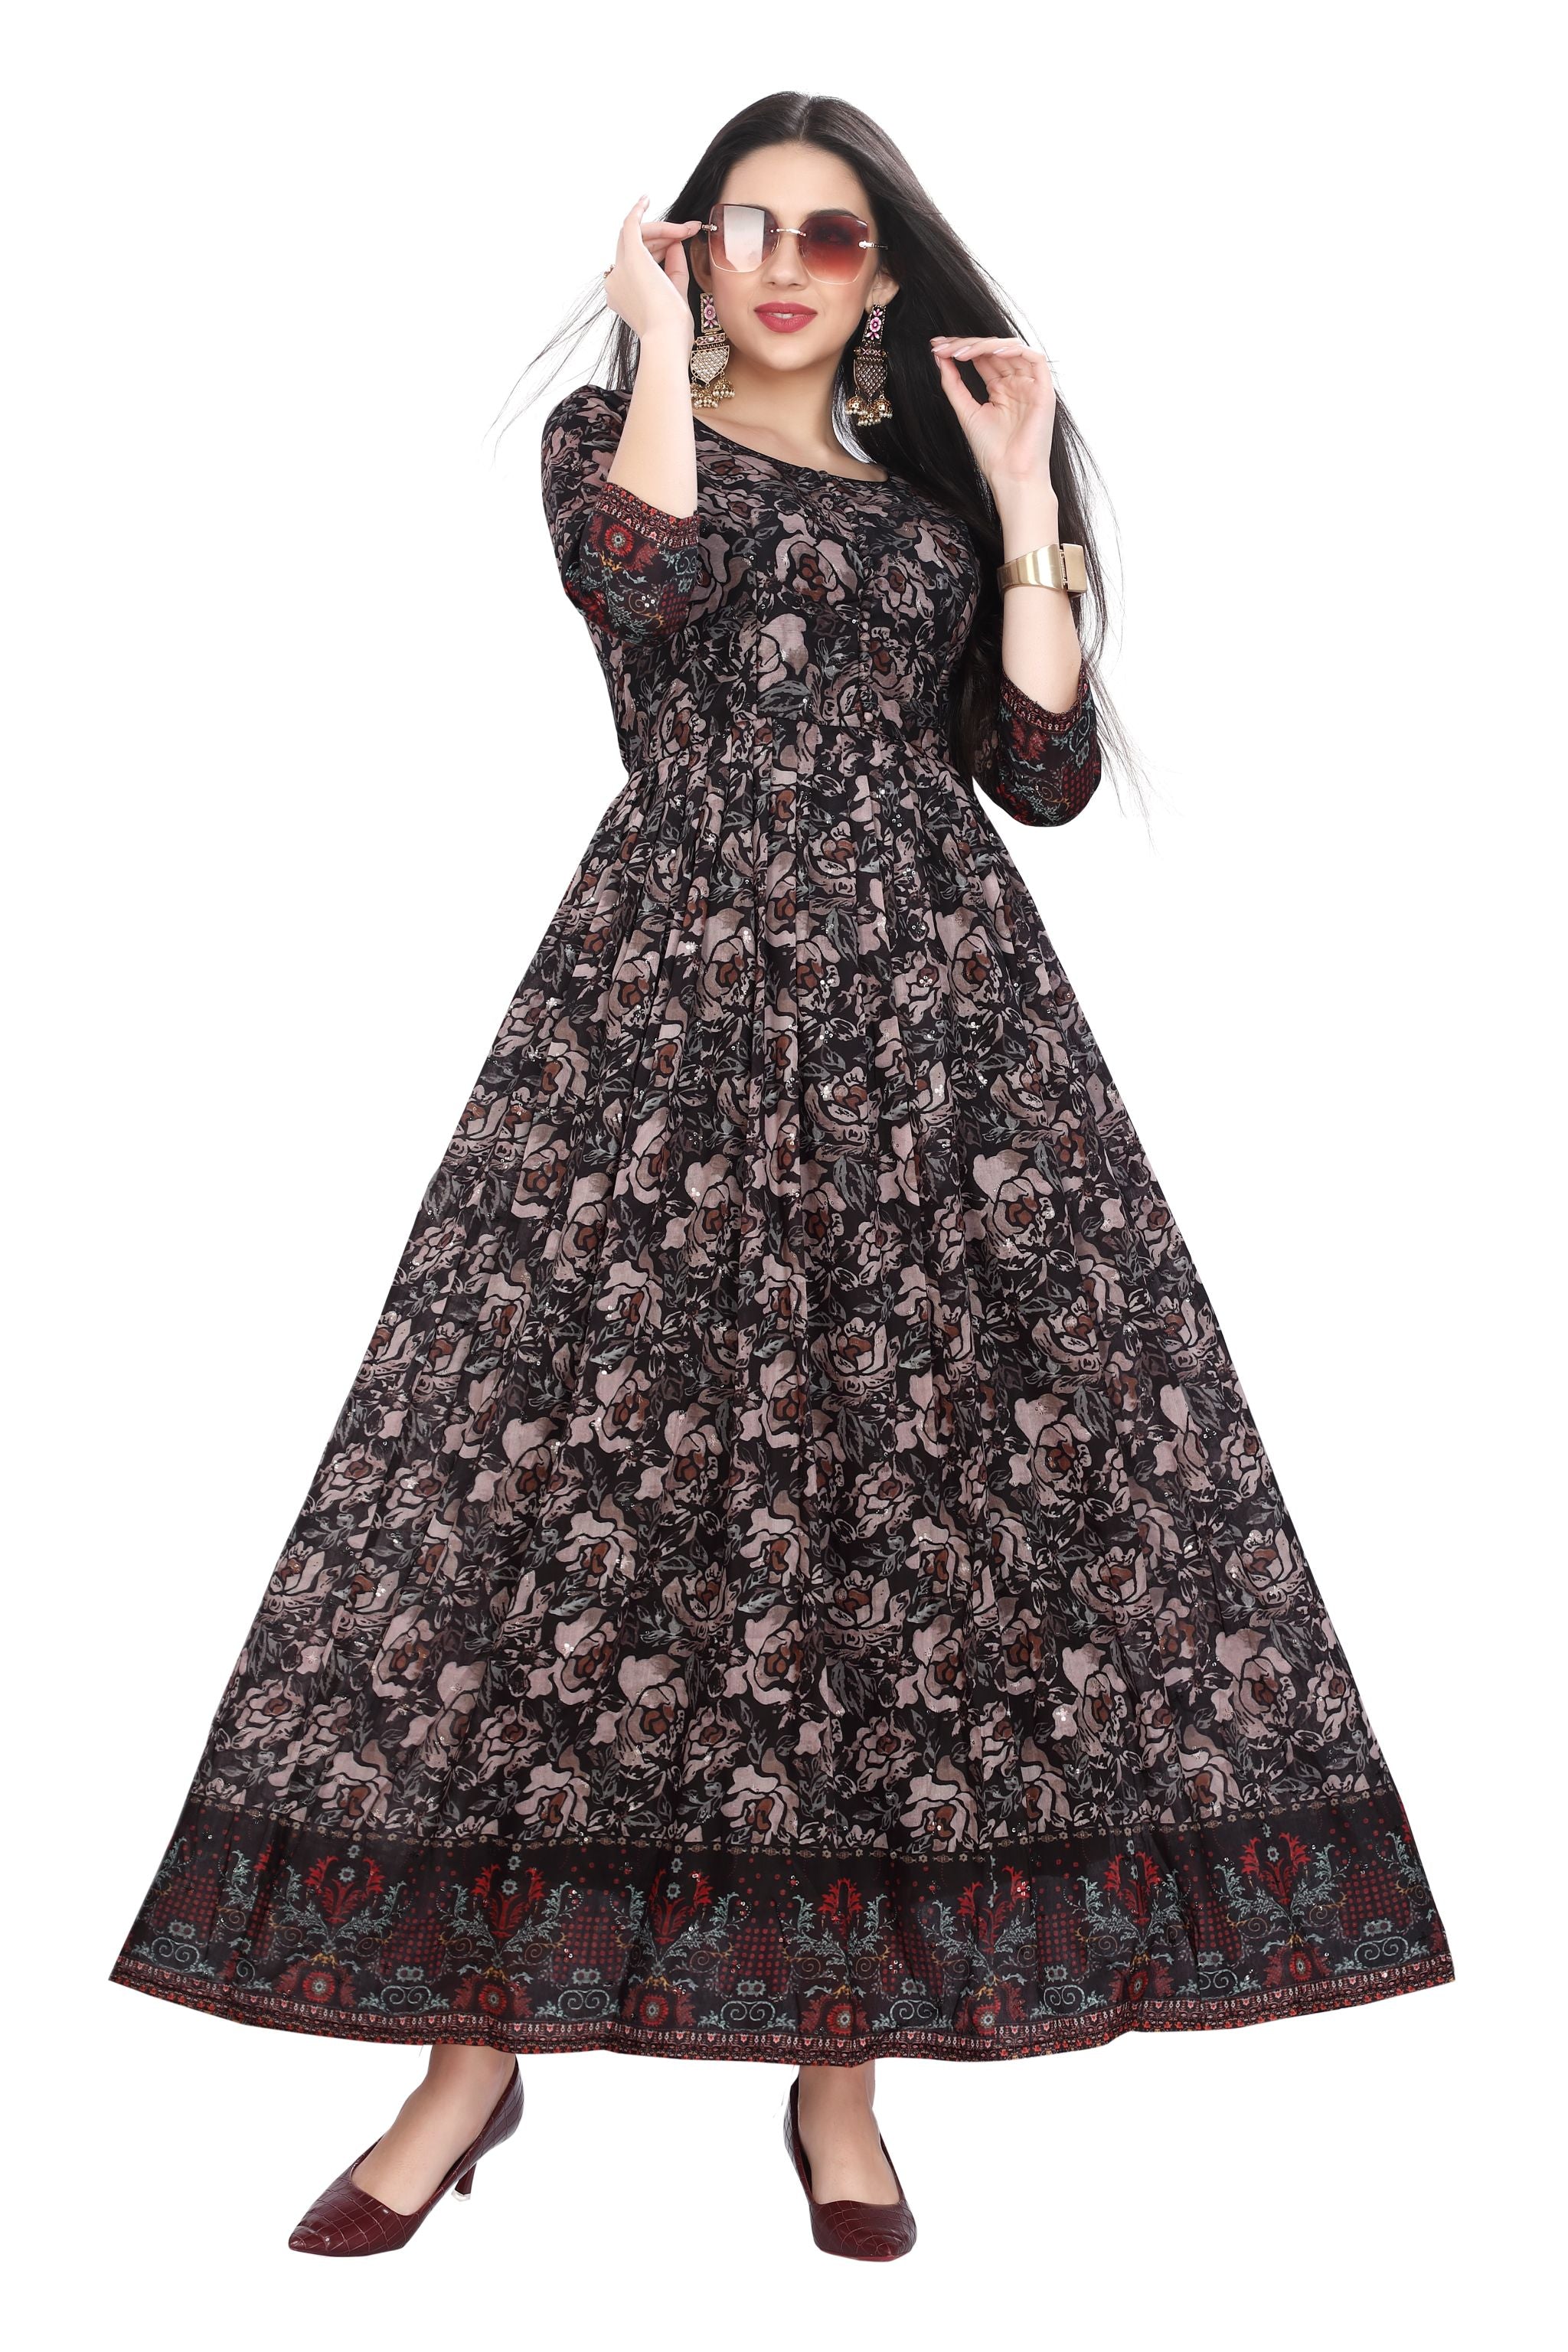 Plain Black New One Piece Dress, Formal Wear at Rs 499/piece in Dehradun |  ID: 25988302355